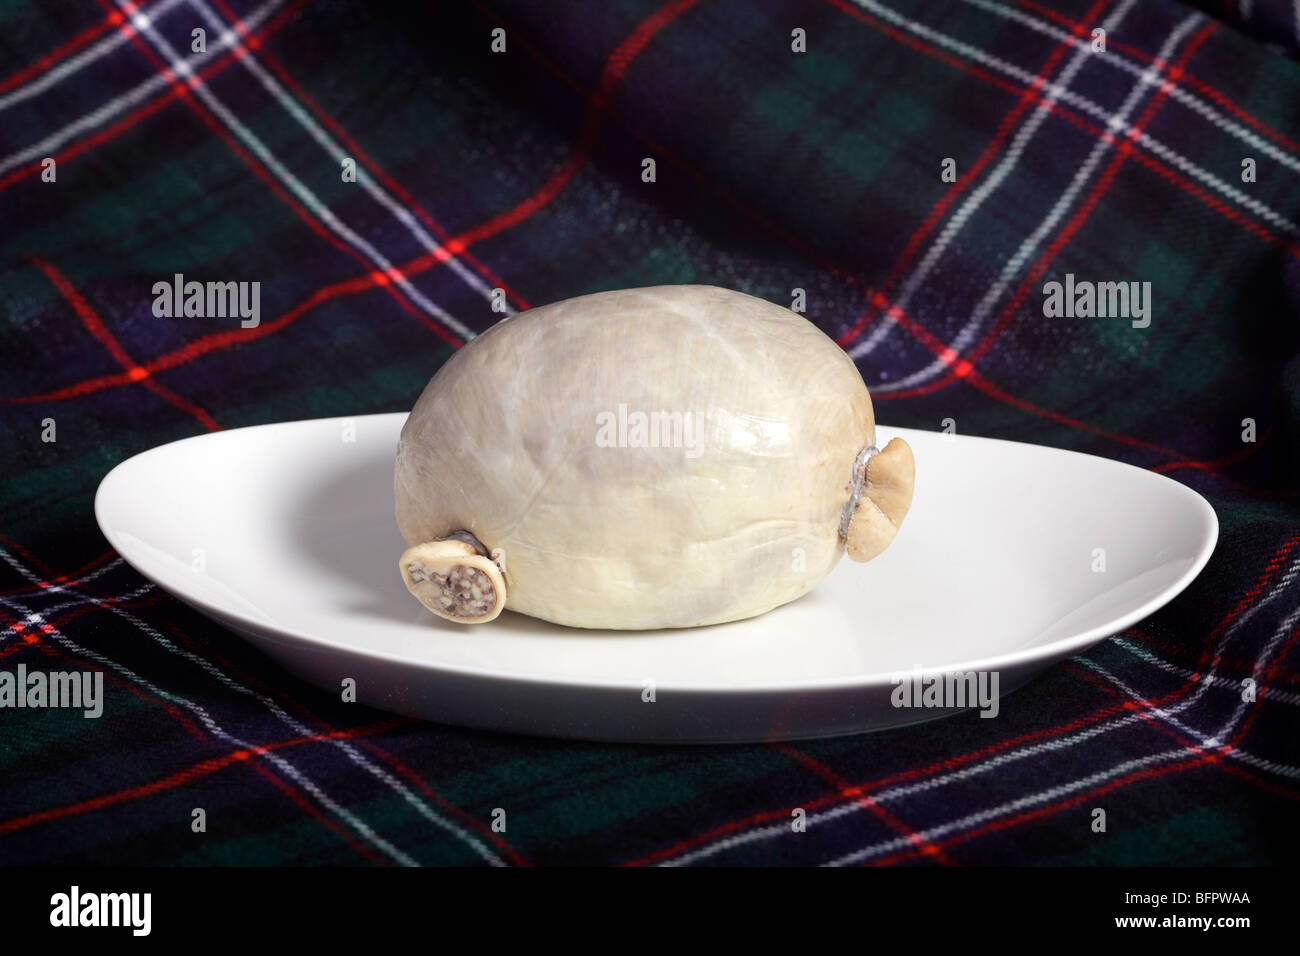 Un traditionnel écossais brutes haggis, dans un vrai estomac de brebis, sur une plaque avec un fond tartan Banque D'Images